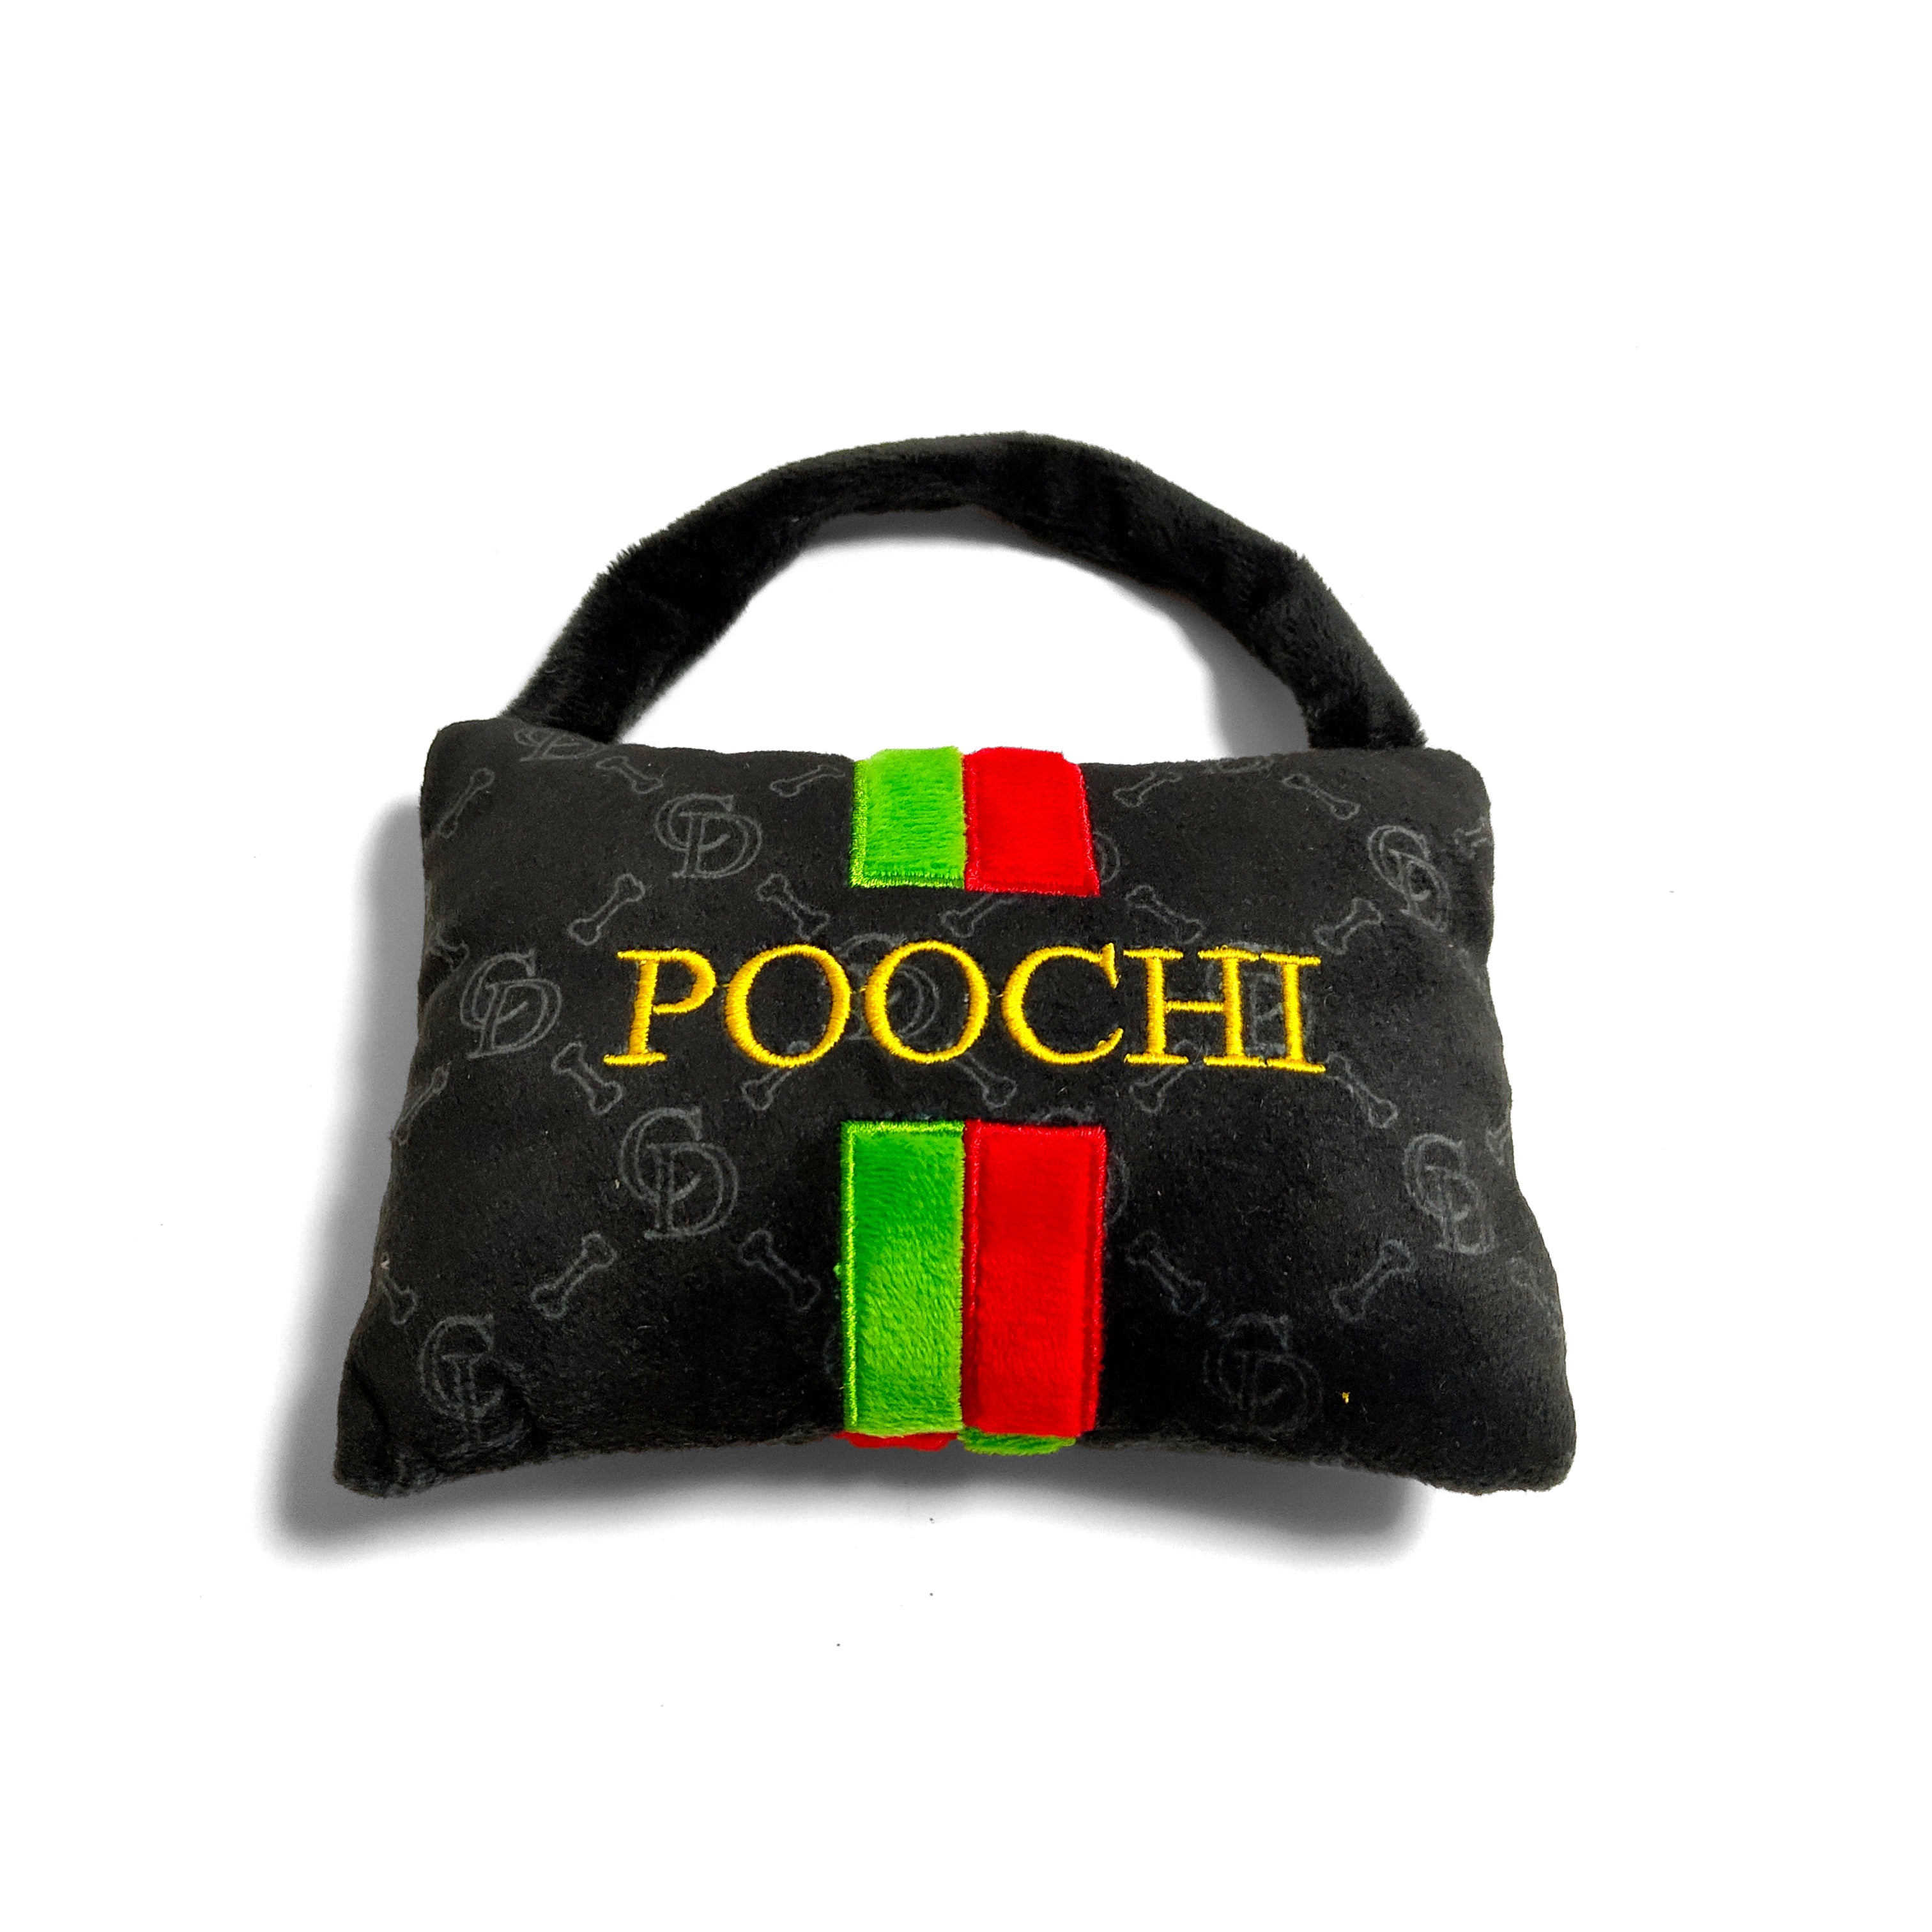 Poochi Handbag Plush Dog Toy